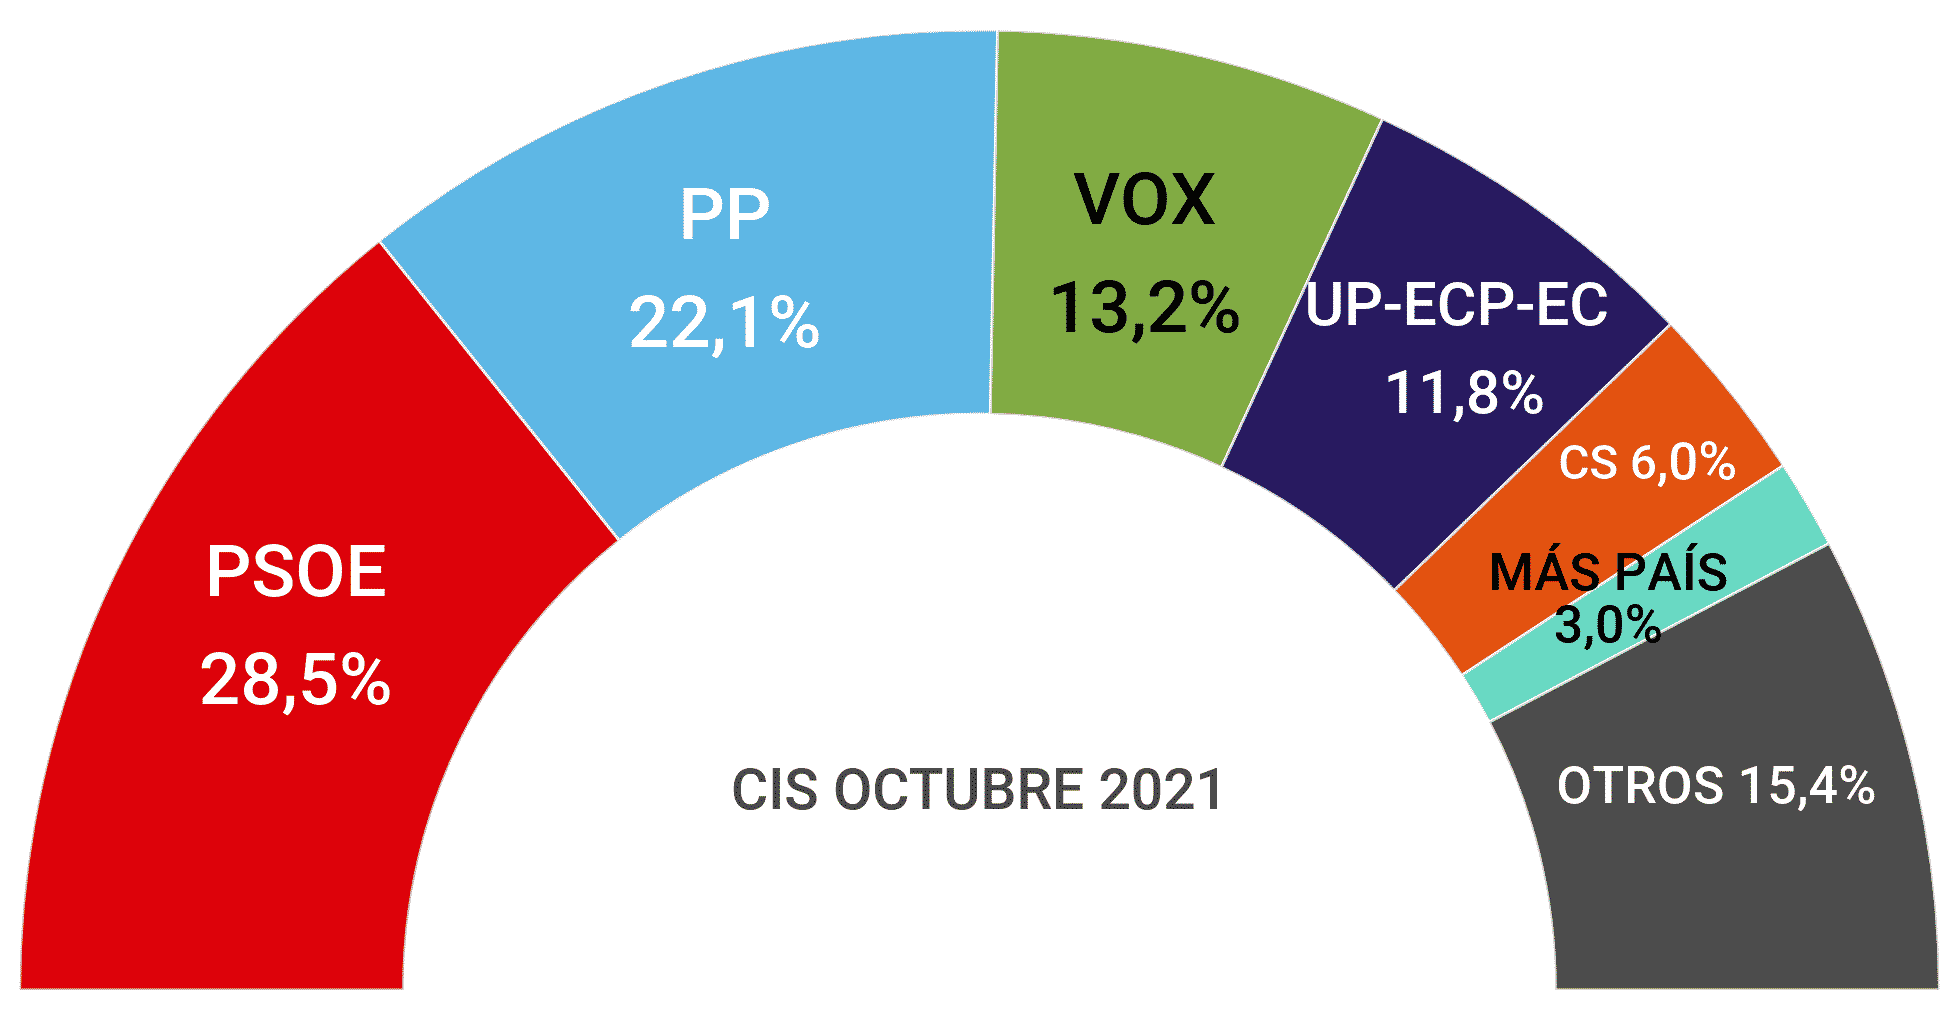 Tarta de los resultados de la encuesta de CIS en octubre de 2021